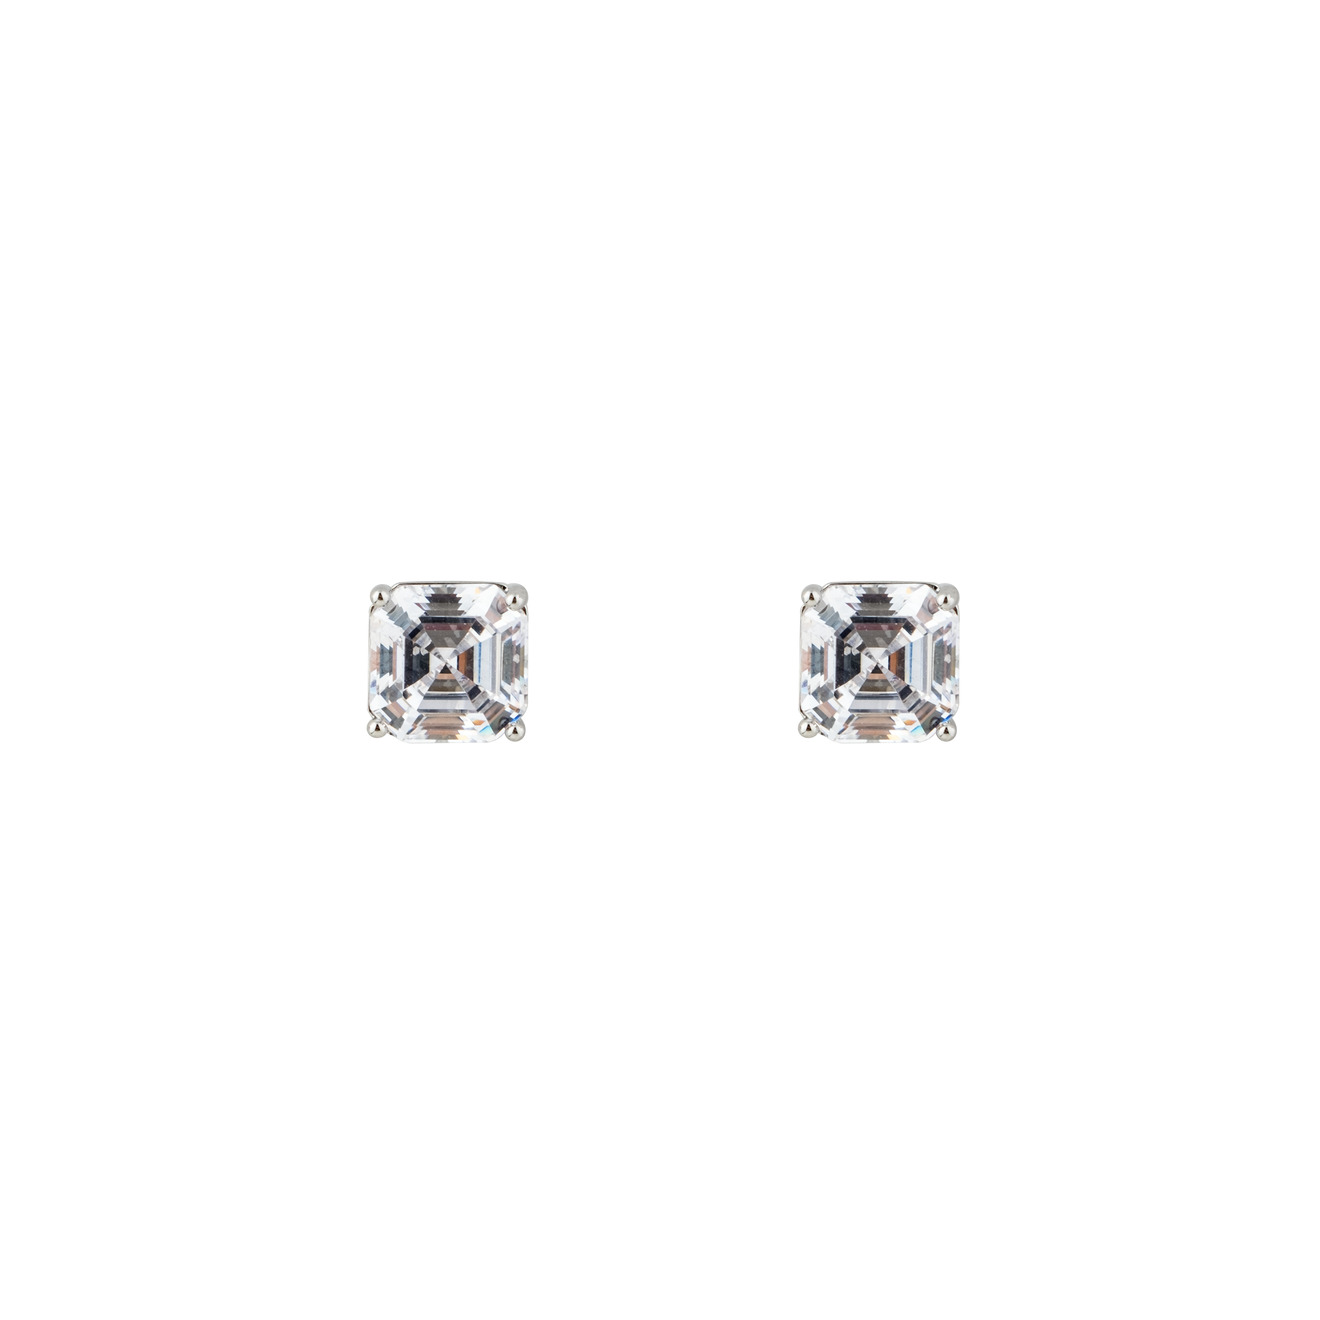 Herald Percy Серебристые серьги с белыми кристаллами herald percy серебристые серьги кольца с кристаллами